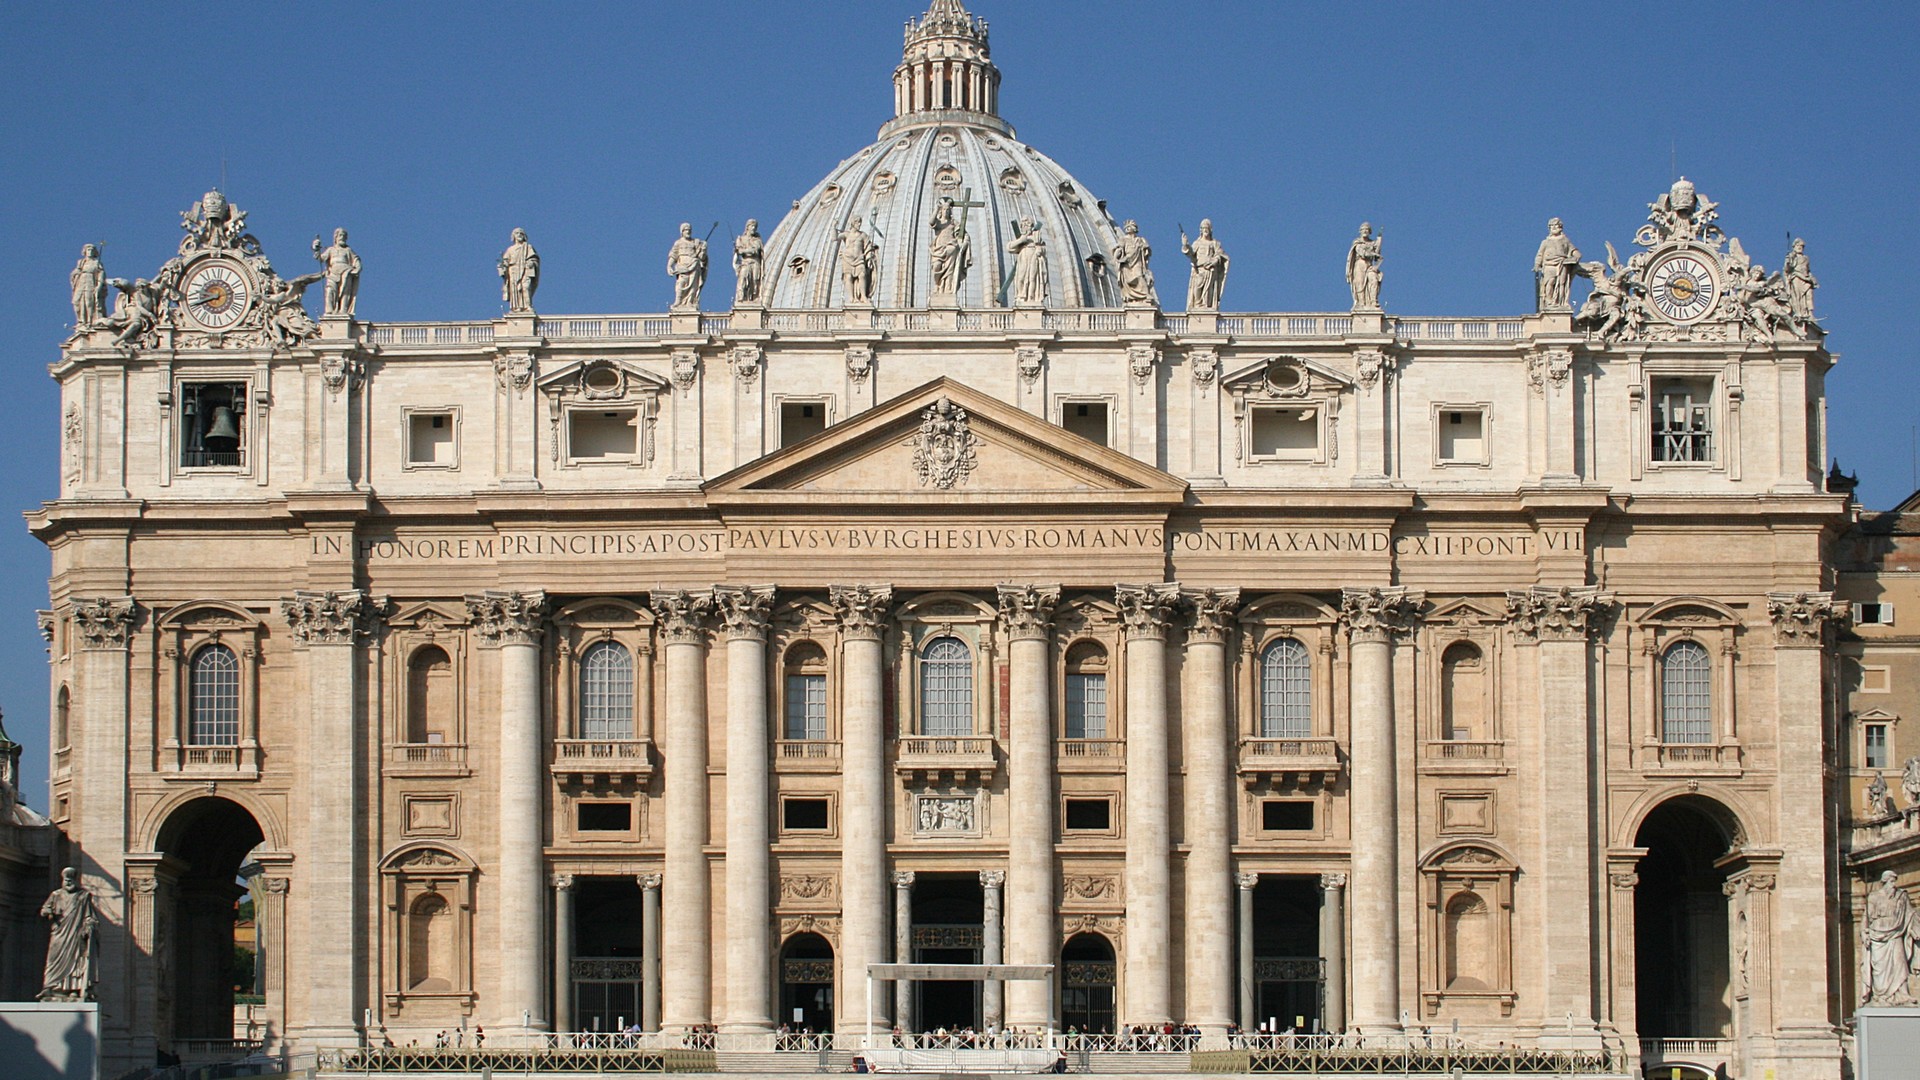 La basilique Saint-Pierre de Rome (photo wikimedia commons Jean-Pol Grandmont CC BY-SA 3.0)